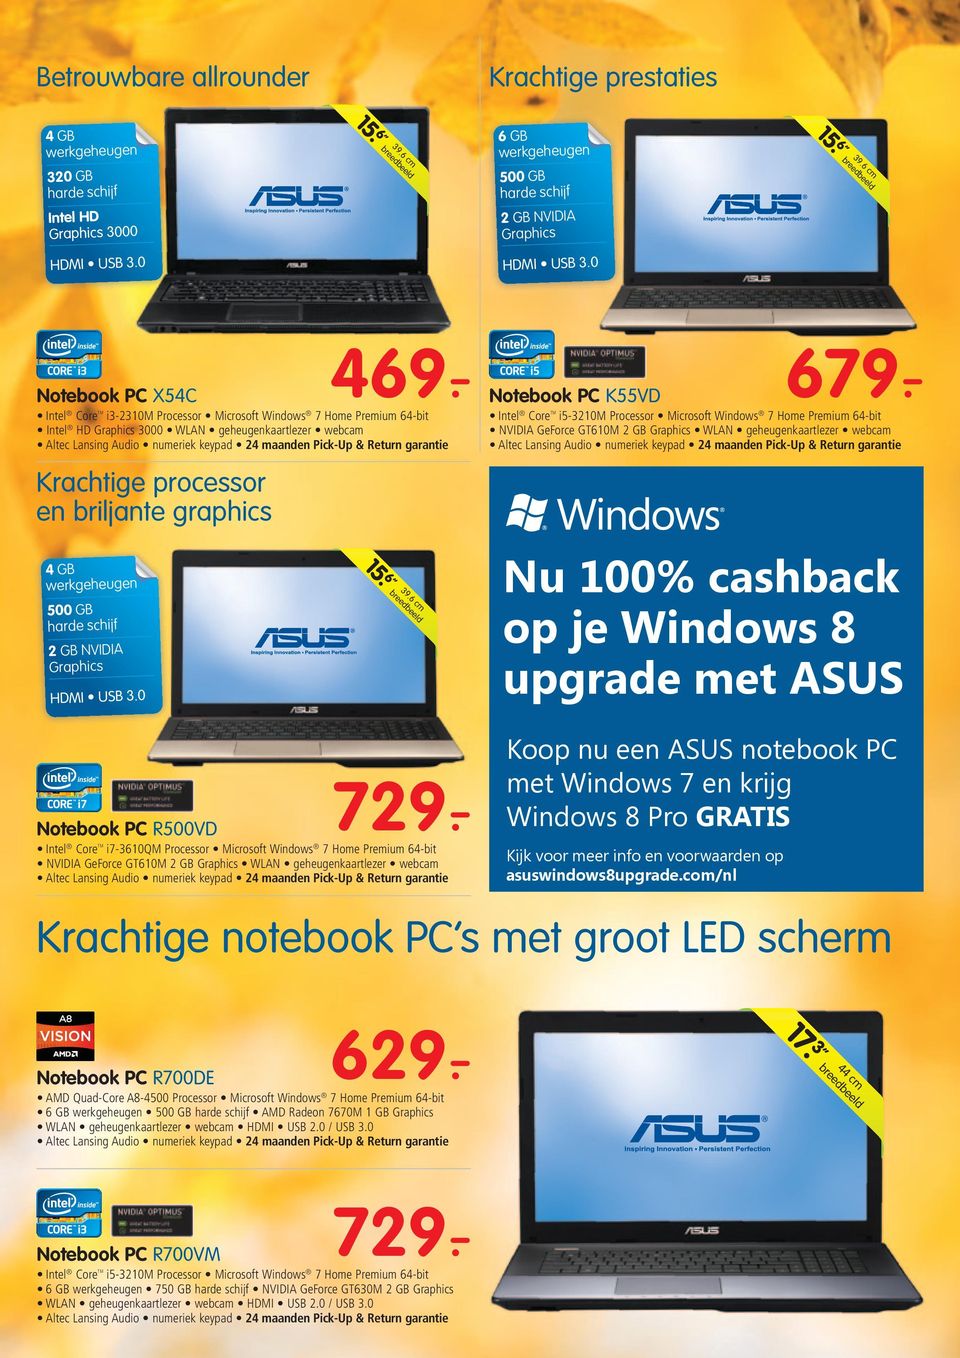 breedbeeld Nu 100% cashback op je Windows 8 upgrade met ASUS Koop nu een ASUS notebook PC met Windows 7 en krijg Windows 8 Pro GRATIS Kijk voor meer info en voorwaarden op asuswindows8upgrade.